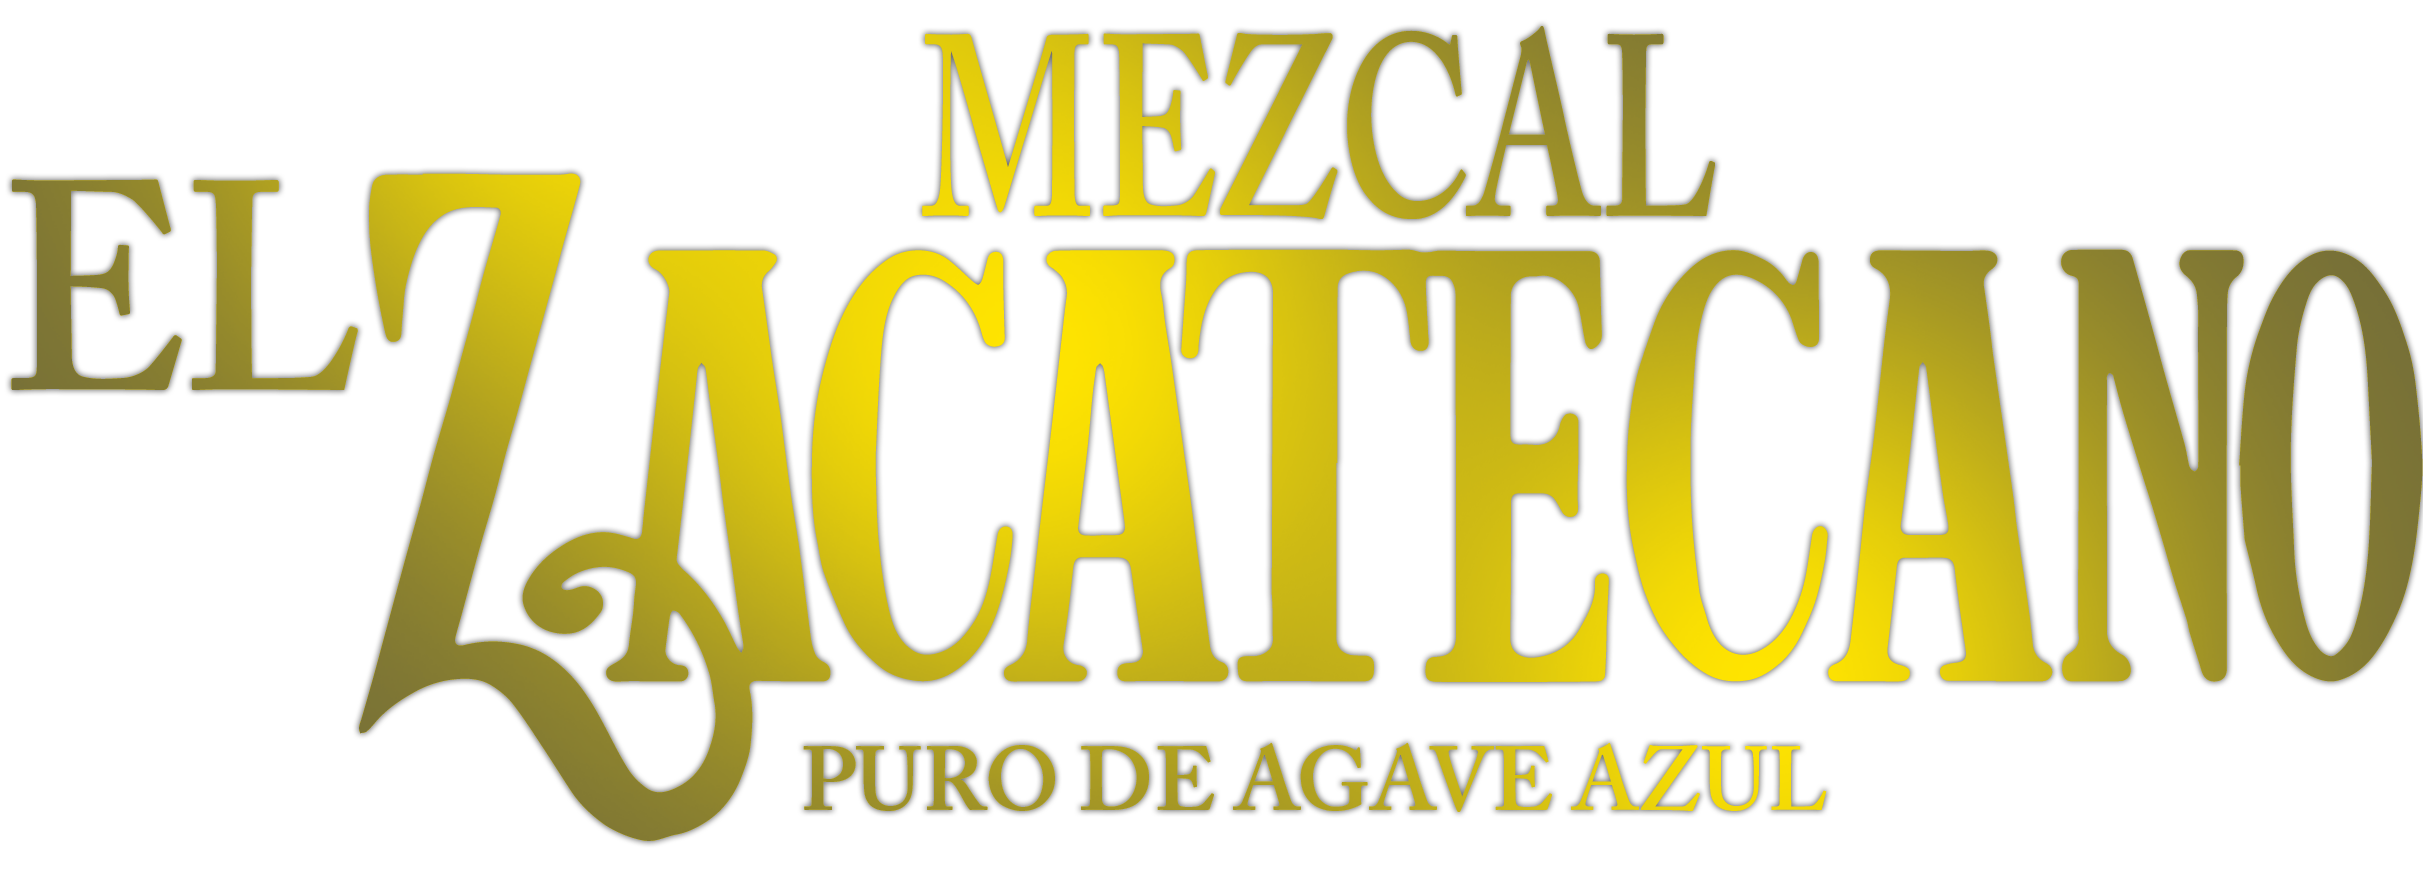 Destiladora El Zacatecano